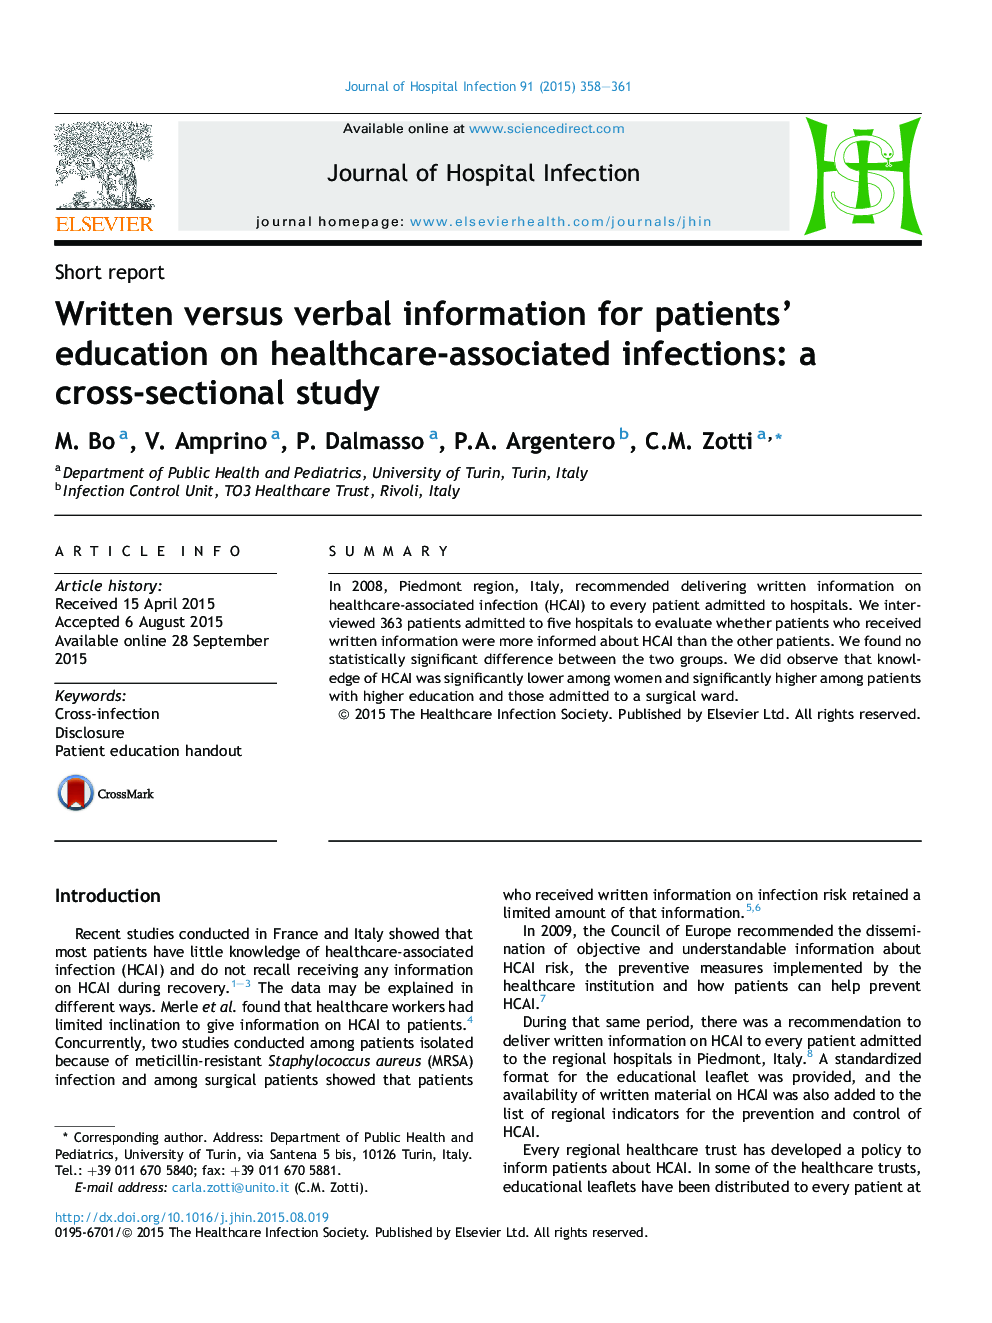 اطلاعاتی نوشته شده در مقابل اطلاعات کلامی برای آموزش بیماران مبتلا به عفونت های مرتبط با مراقبت های بهداشتی: یک مطالعه مقطعی 